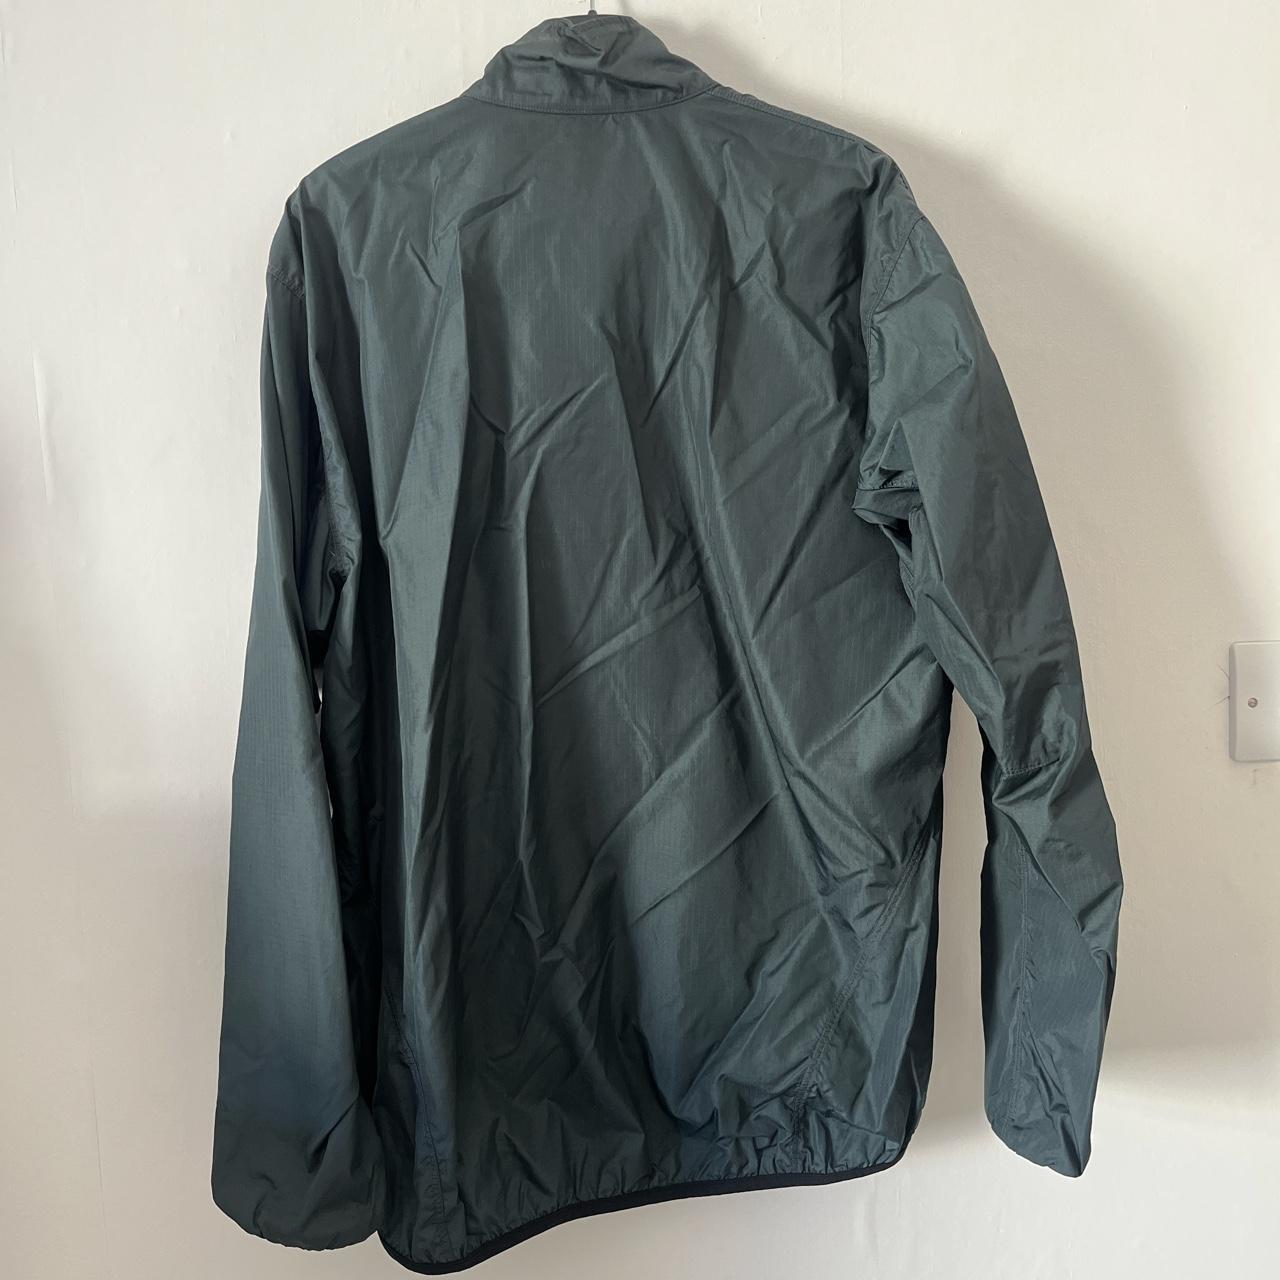 Vintage Arc’teryx 2001 Tau jacket. Pockets have been... - Depop